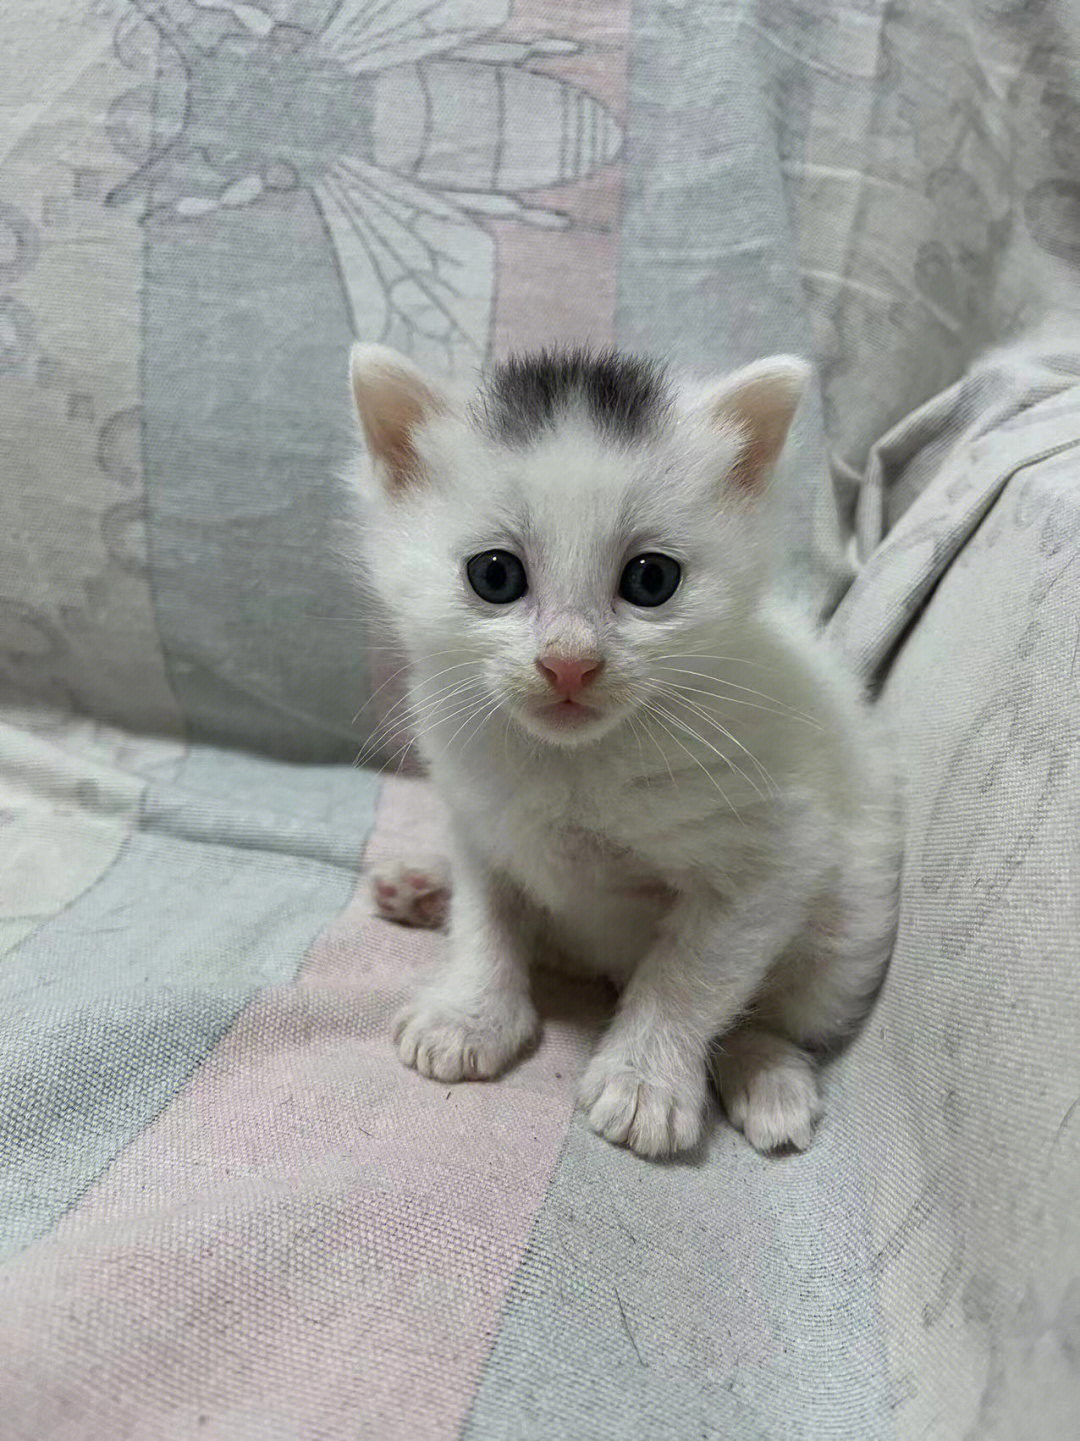 5月7日 莫西干发型可爱奶猫找领养